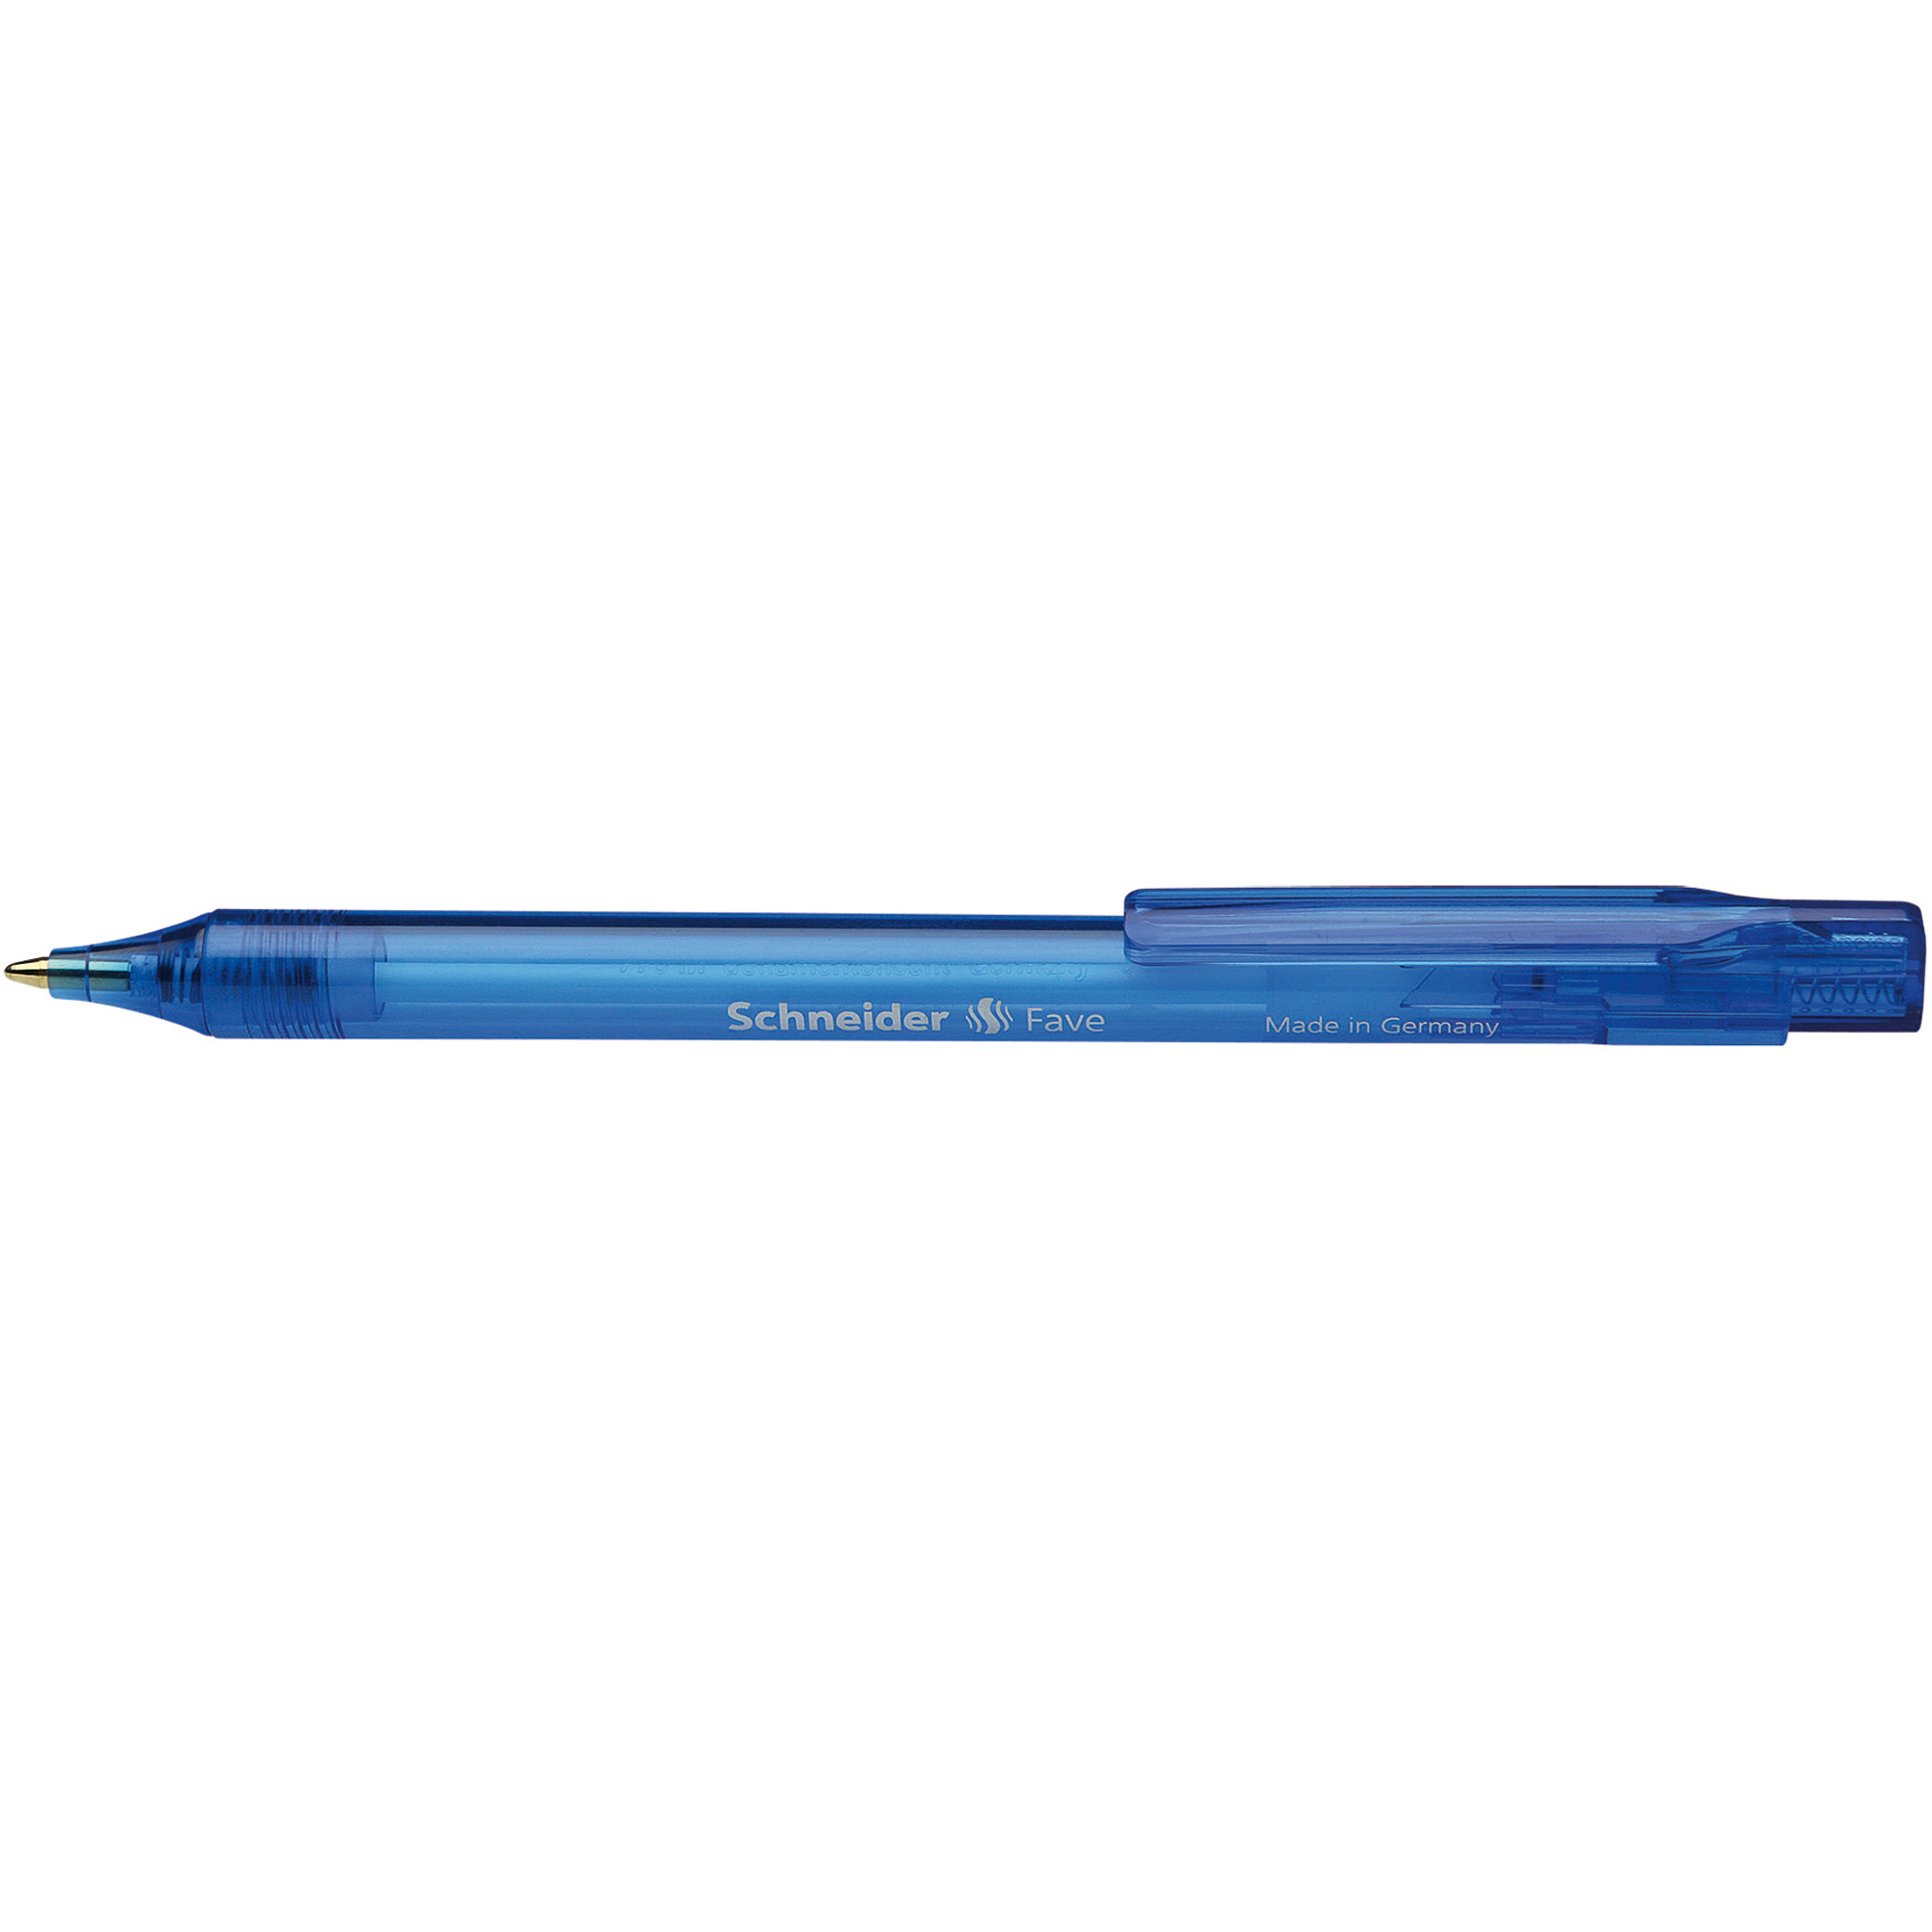 Schneider Kugelschreiber Fave schwarz blau